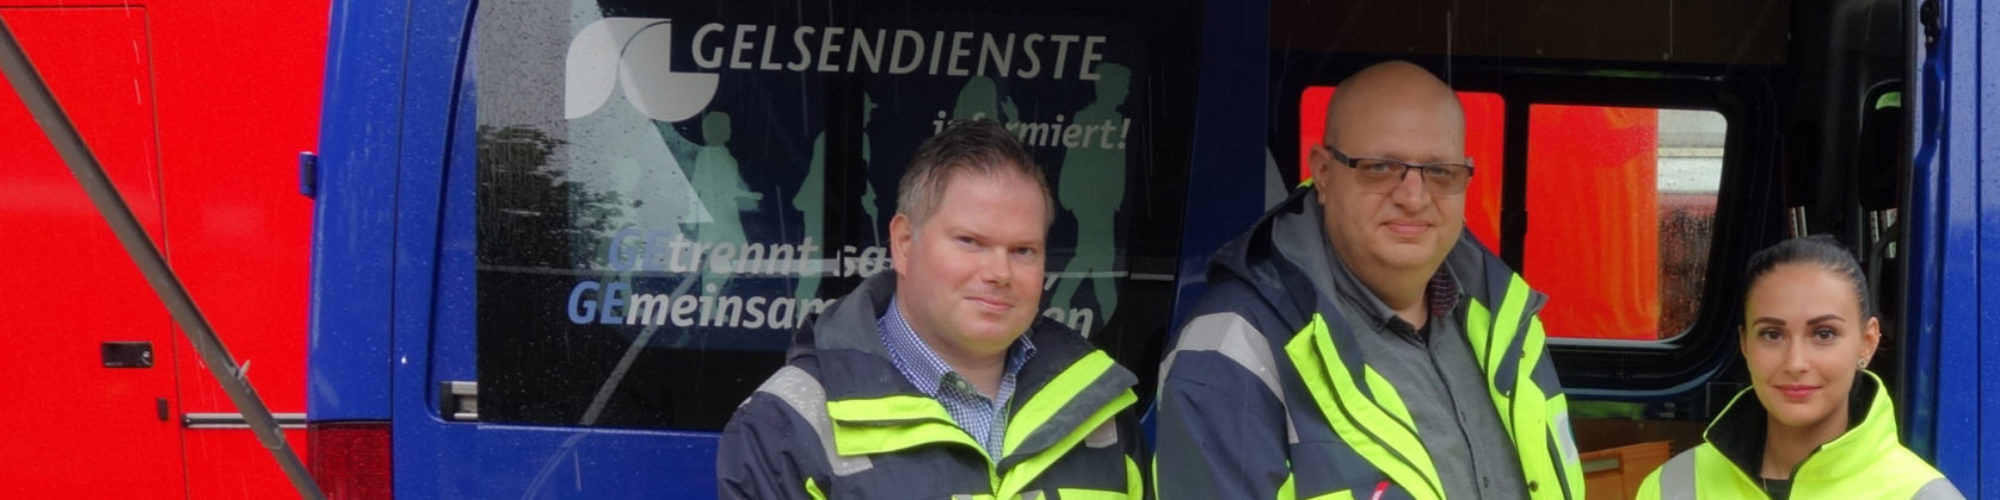 Die Mitarbeiterinnen und Mitarbeiter der GELSENDIENSTE Abfallberatung im Einsatz mit dem Infomobil auf dem Wochenmarkt in Ückendorf.